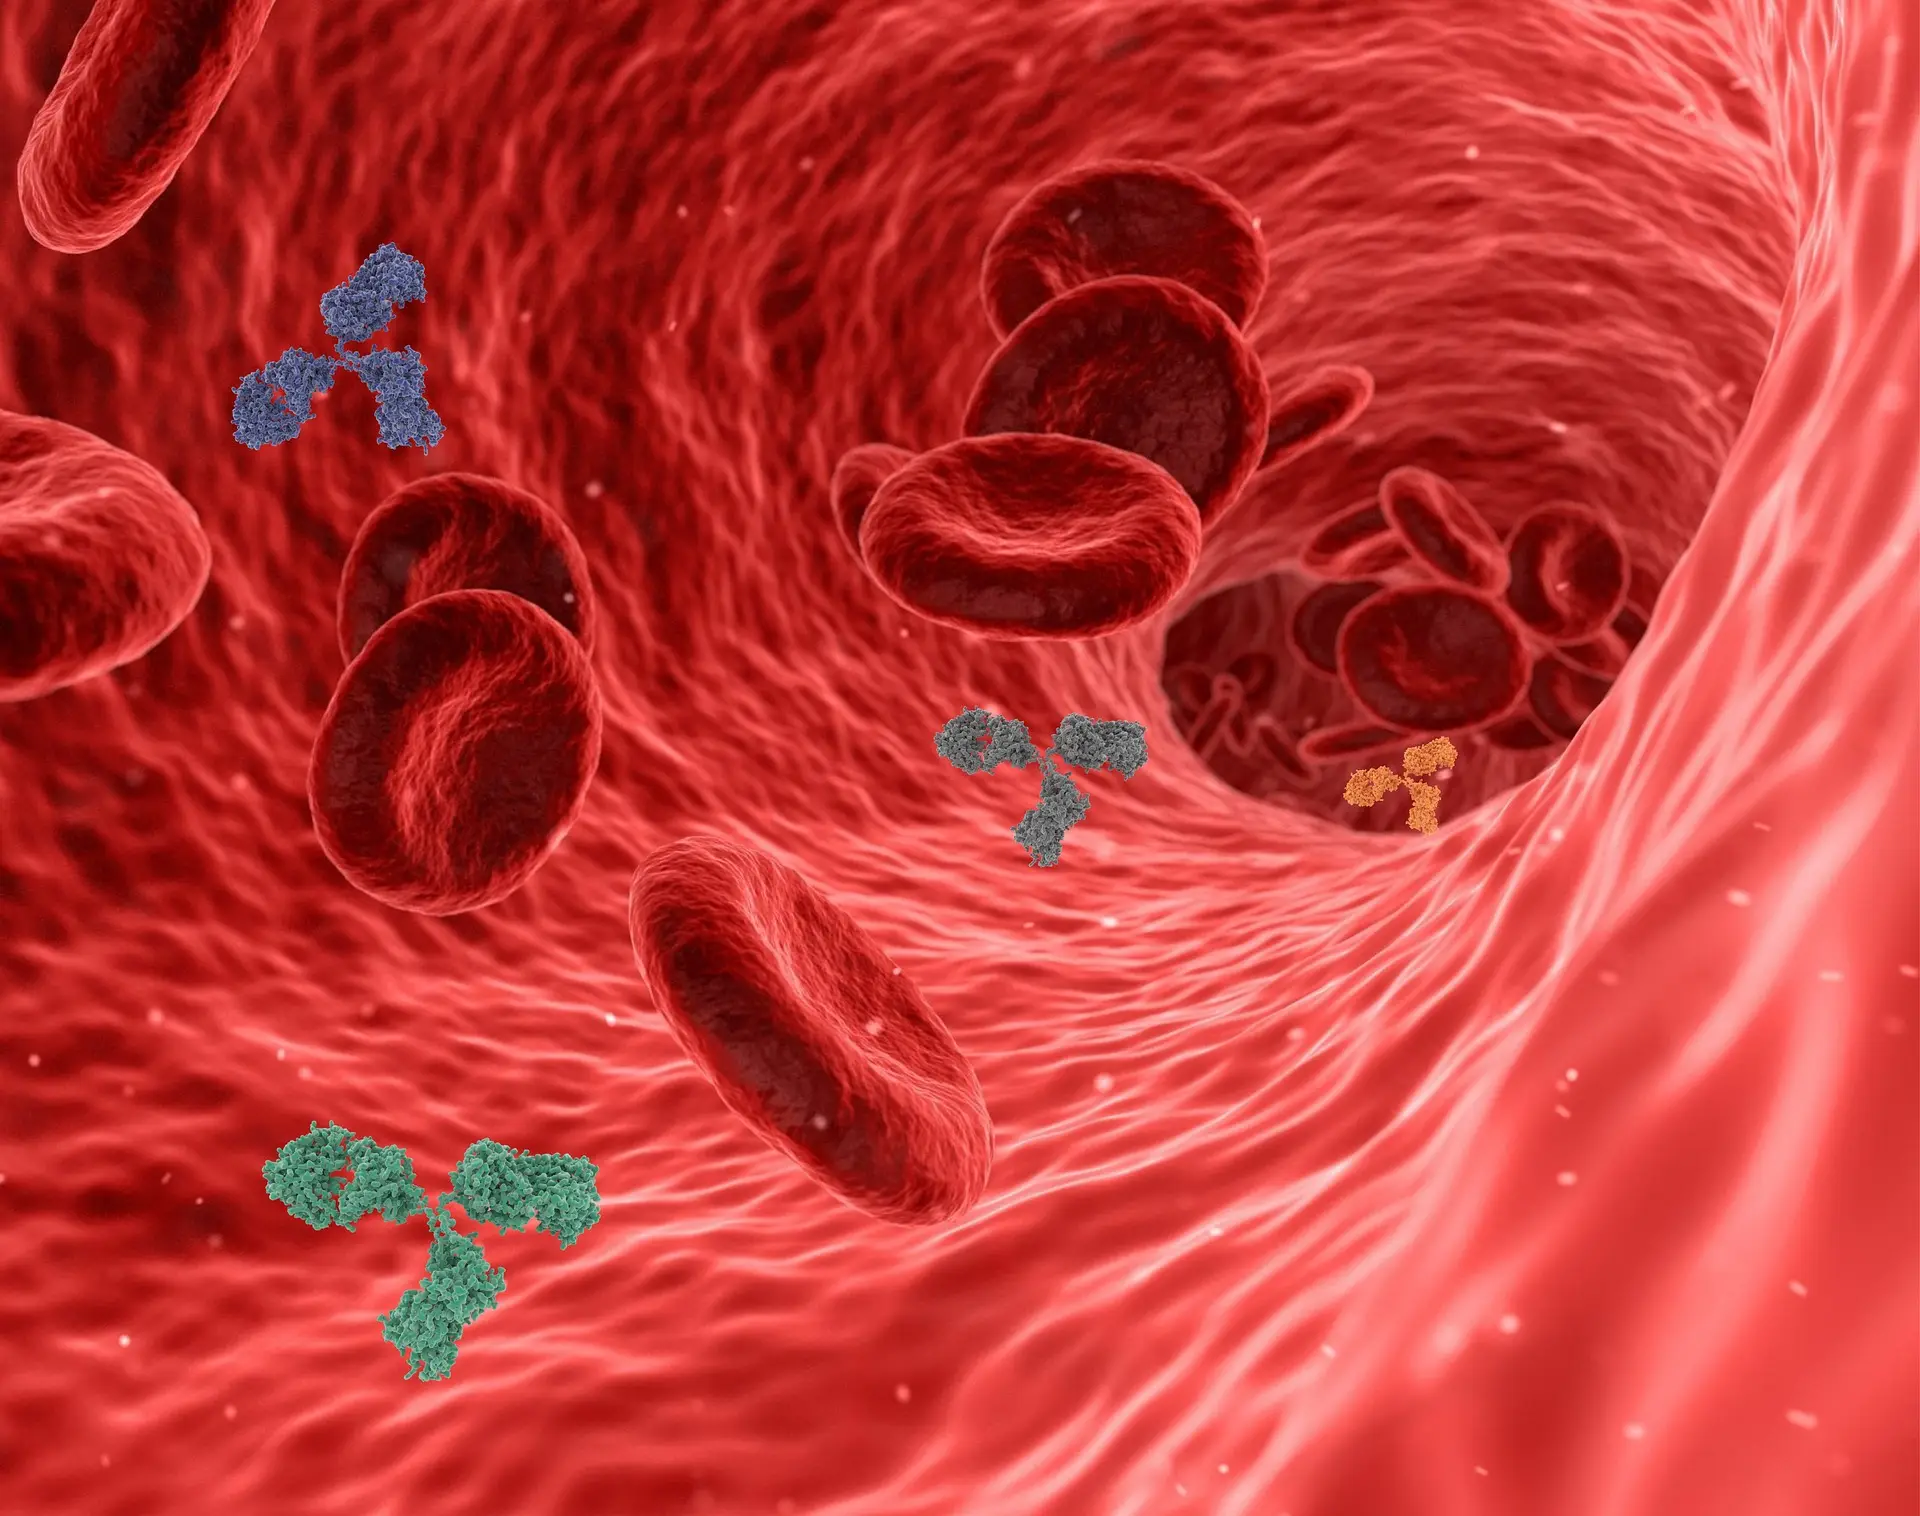 혈관-안을-타고-흐르는-적혈구와-다양한-세포들